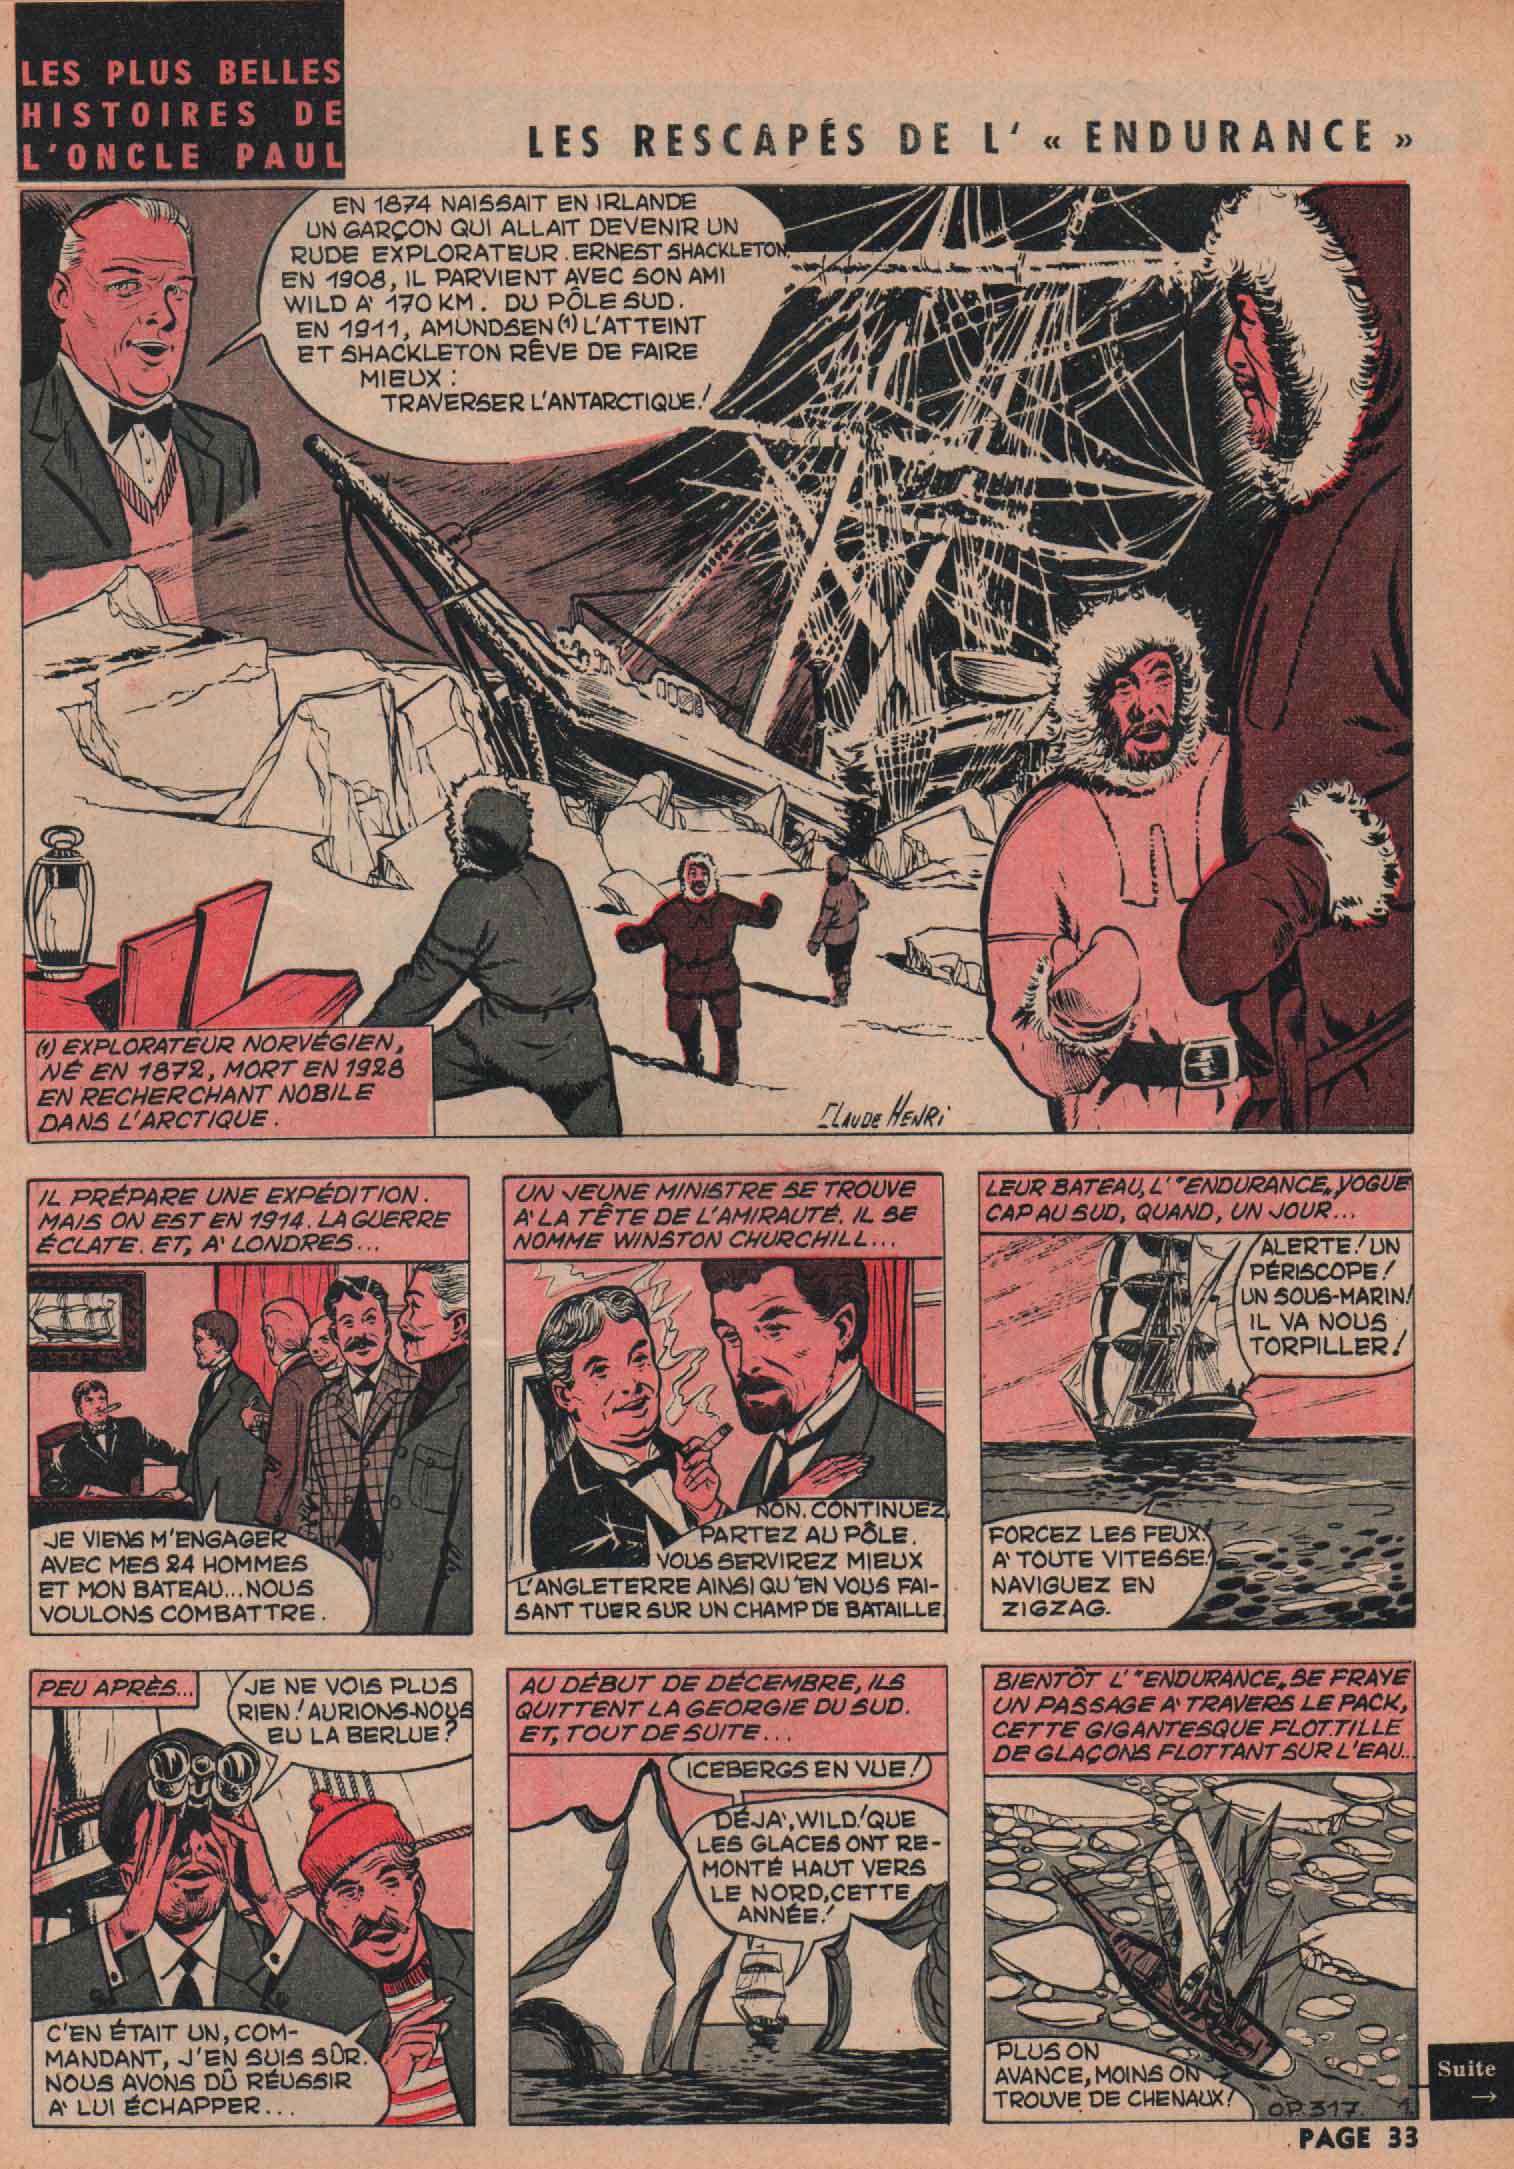 « Oncle Paul : Les Rescapés de L’Endurance » Spirou n° 1203 (04/05/1961).